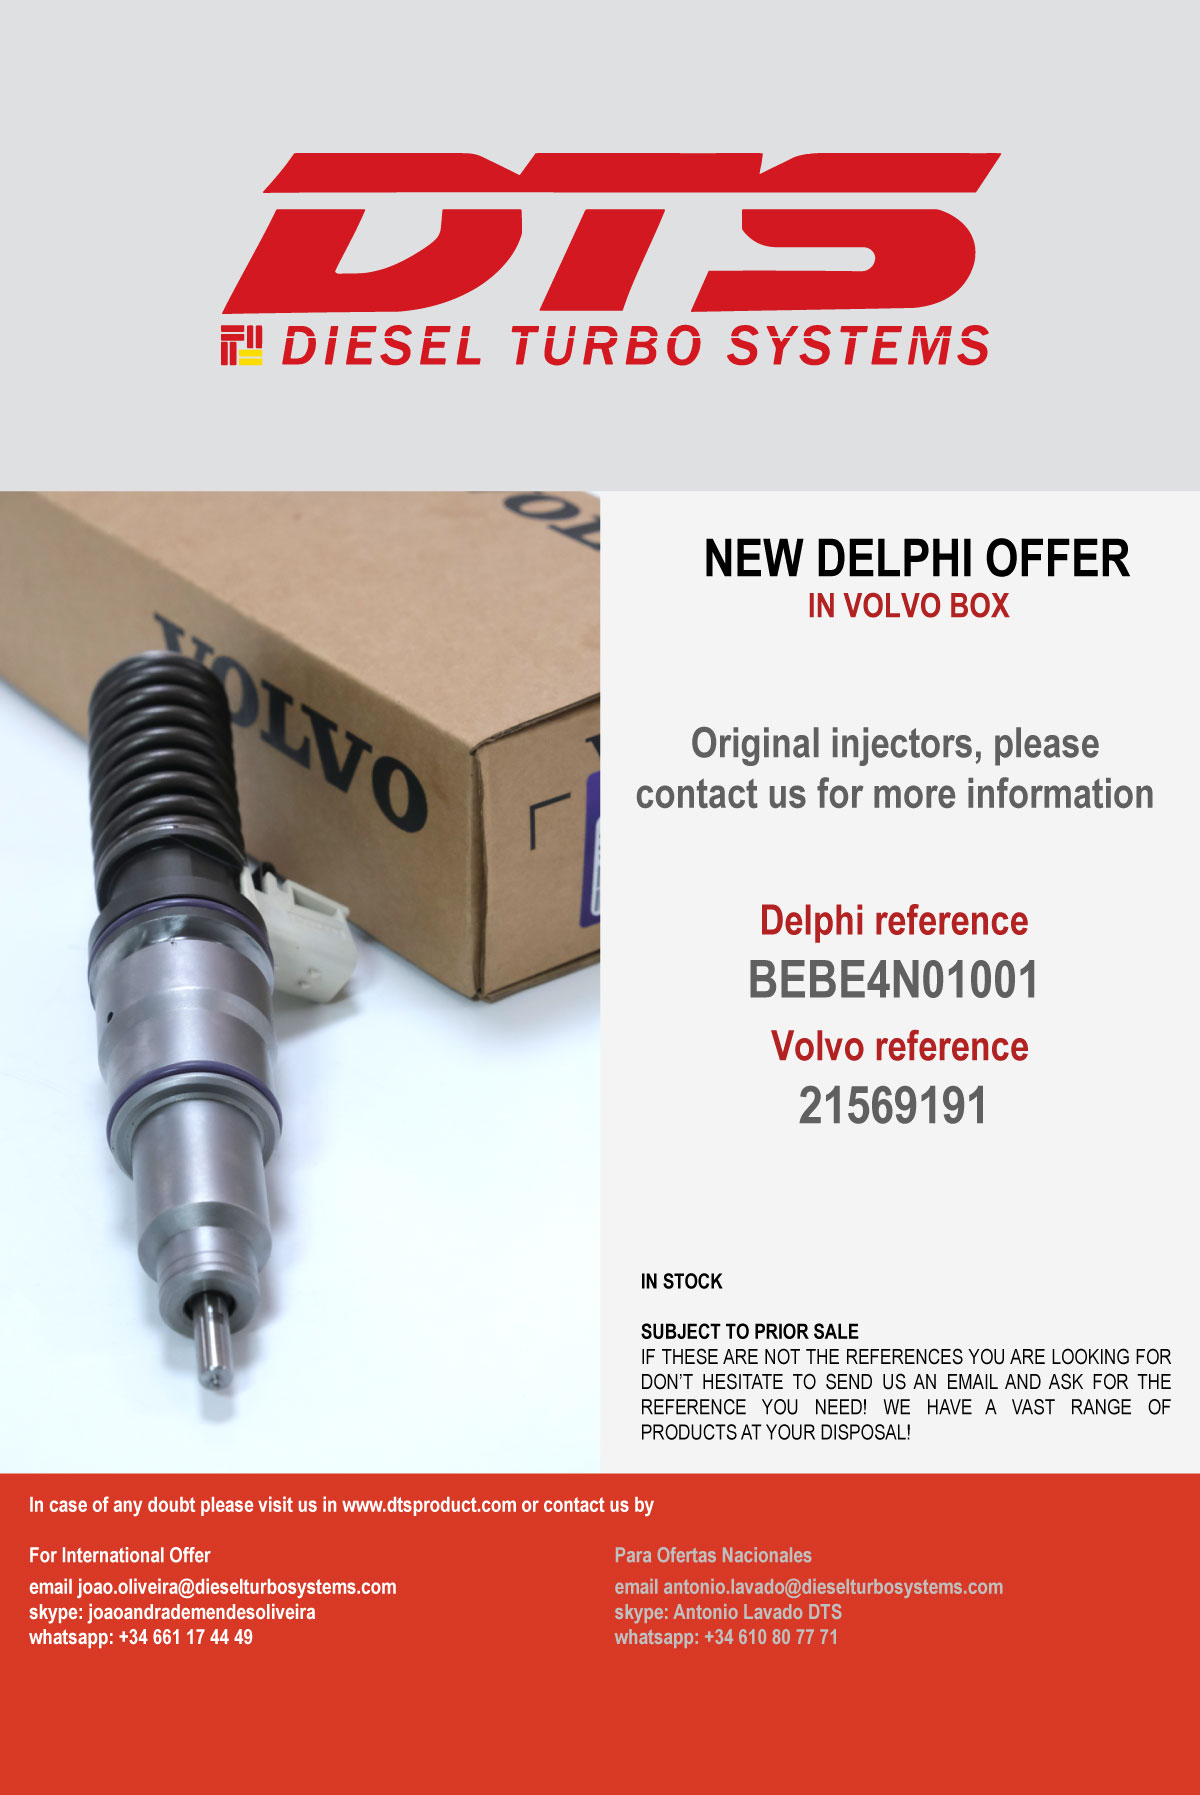 Diesel Turbo Systems S.L. Oferta Delphi en stock